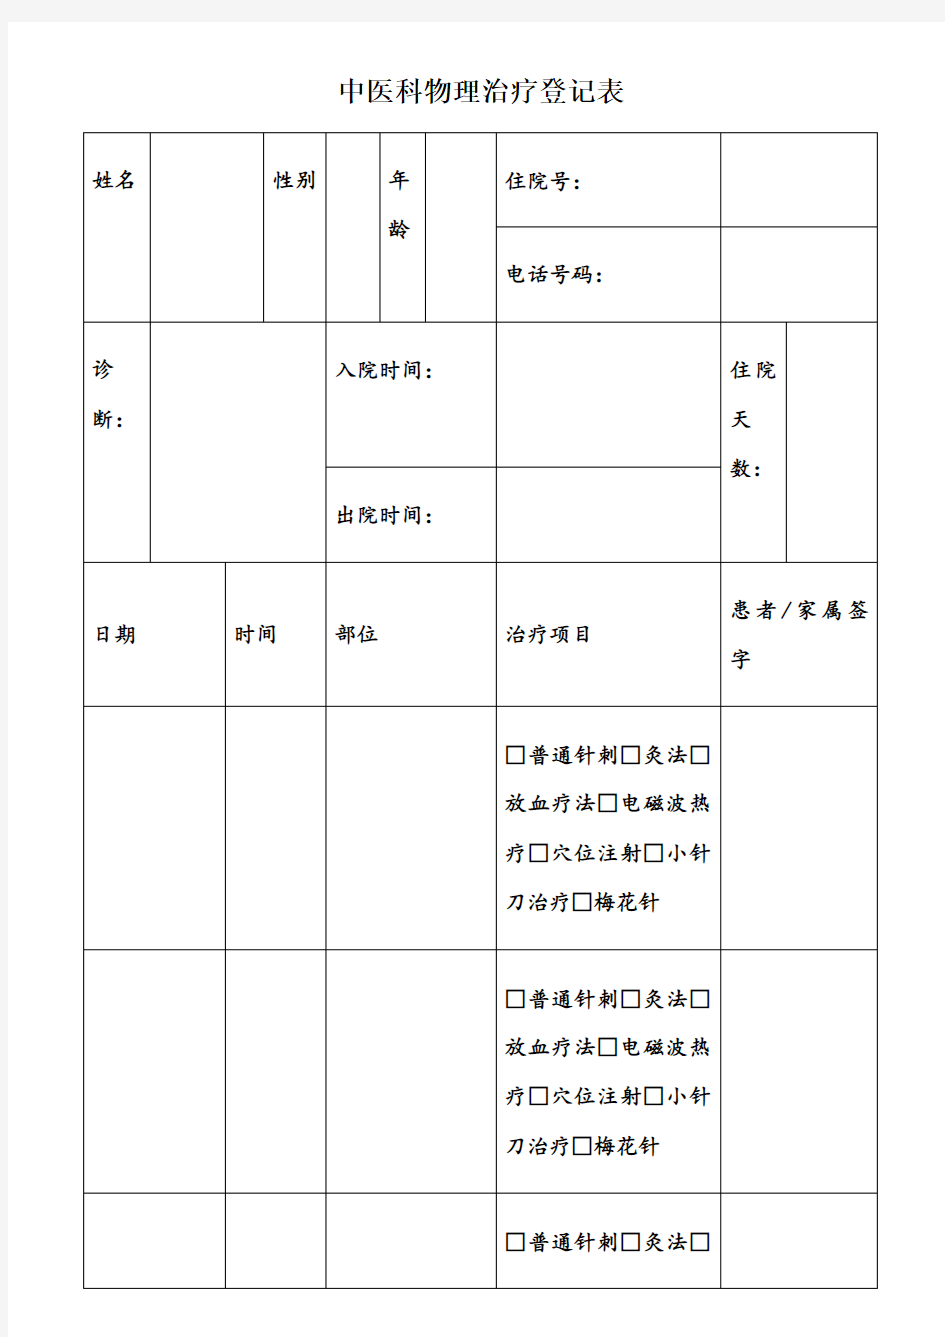 中医科物理治疗登记表